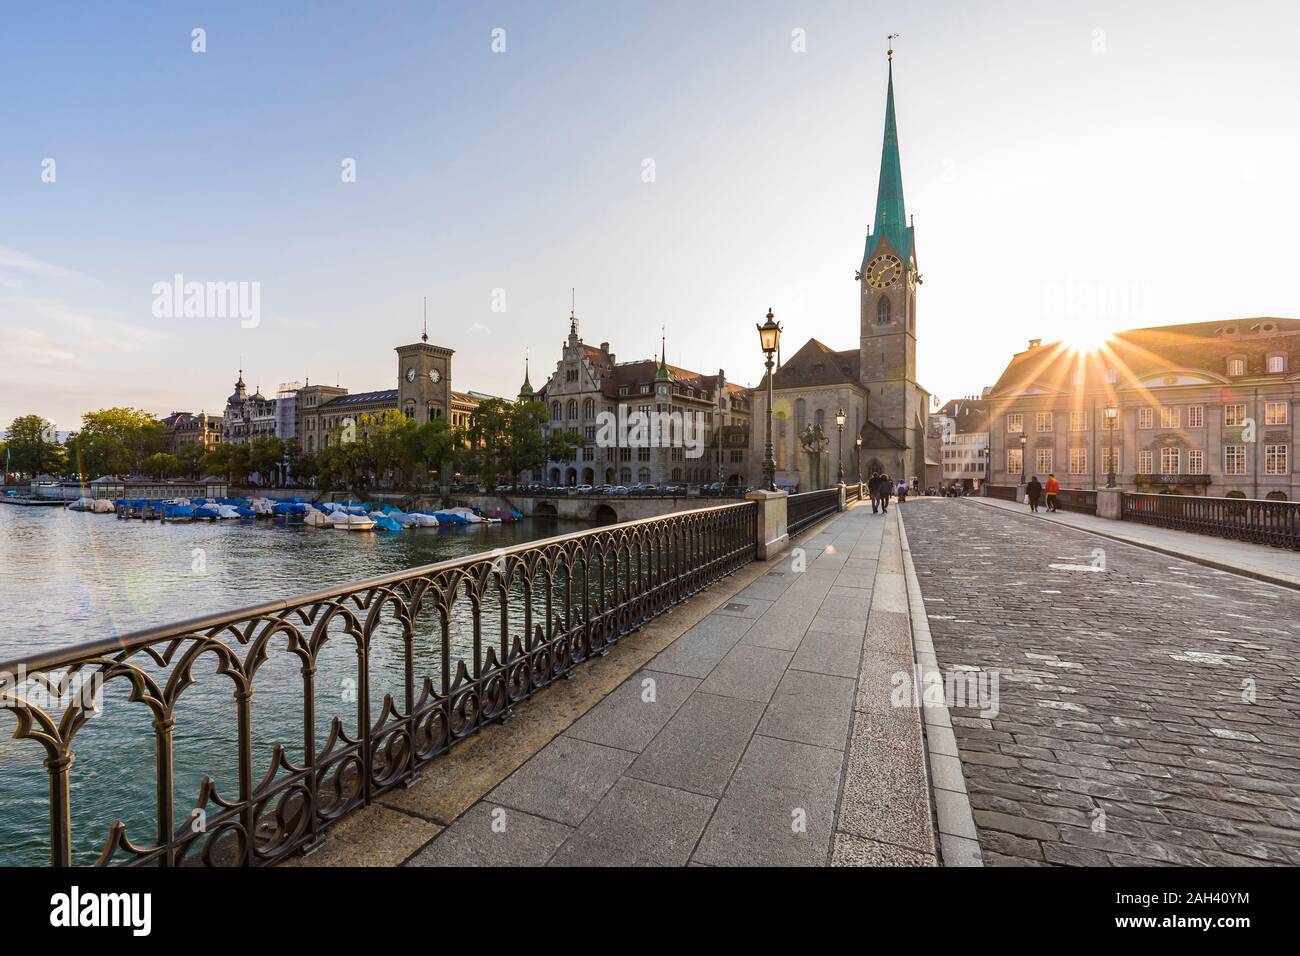 Switzerland, Canton of Zurich, Zurich, Munsterbrucke bridge at sunset with Fraumunster church in background Stock Photo